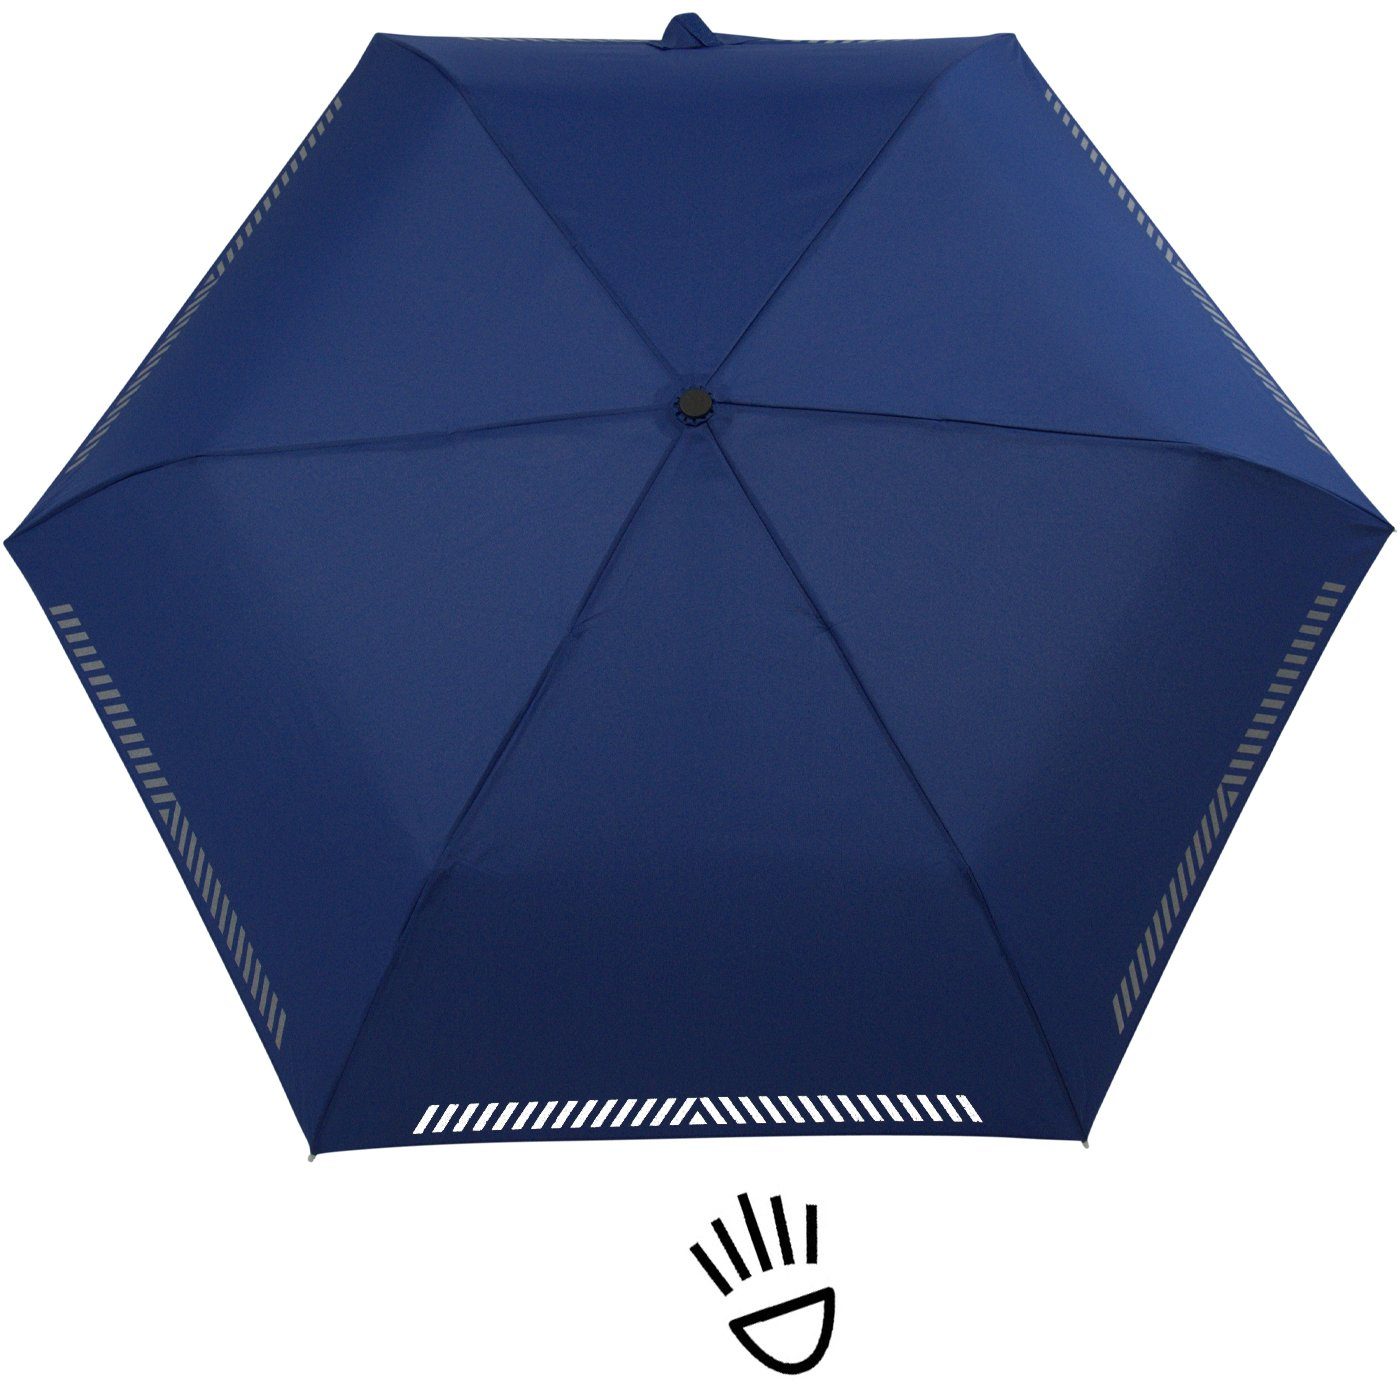 blau reflektierend, mit Taschenregenschirm Kinderschirm durch Sicherheit Auf-Zu-Automatik, Reflex-Streifen - iX-brella